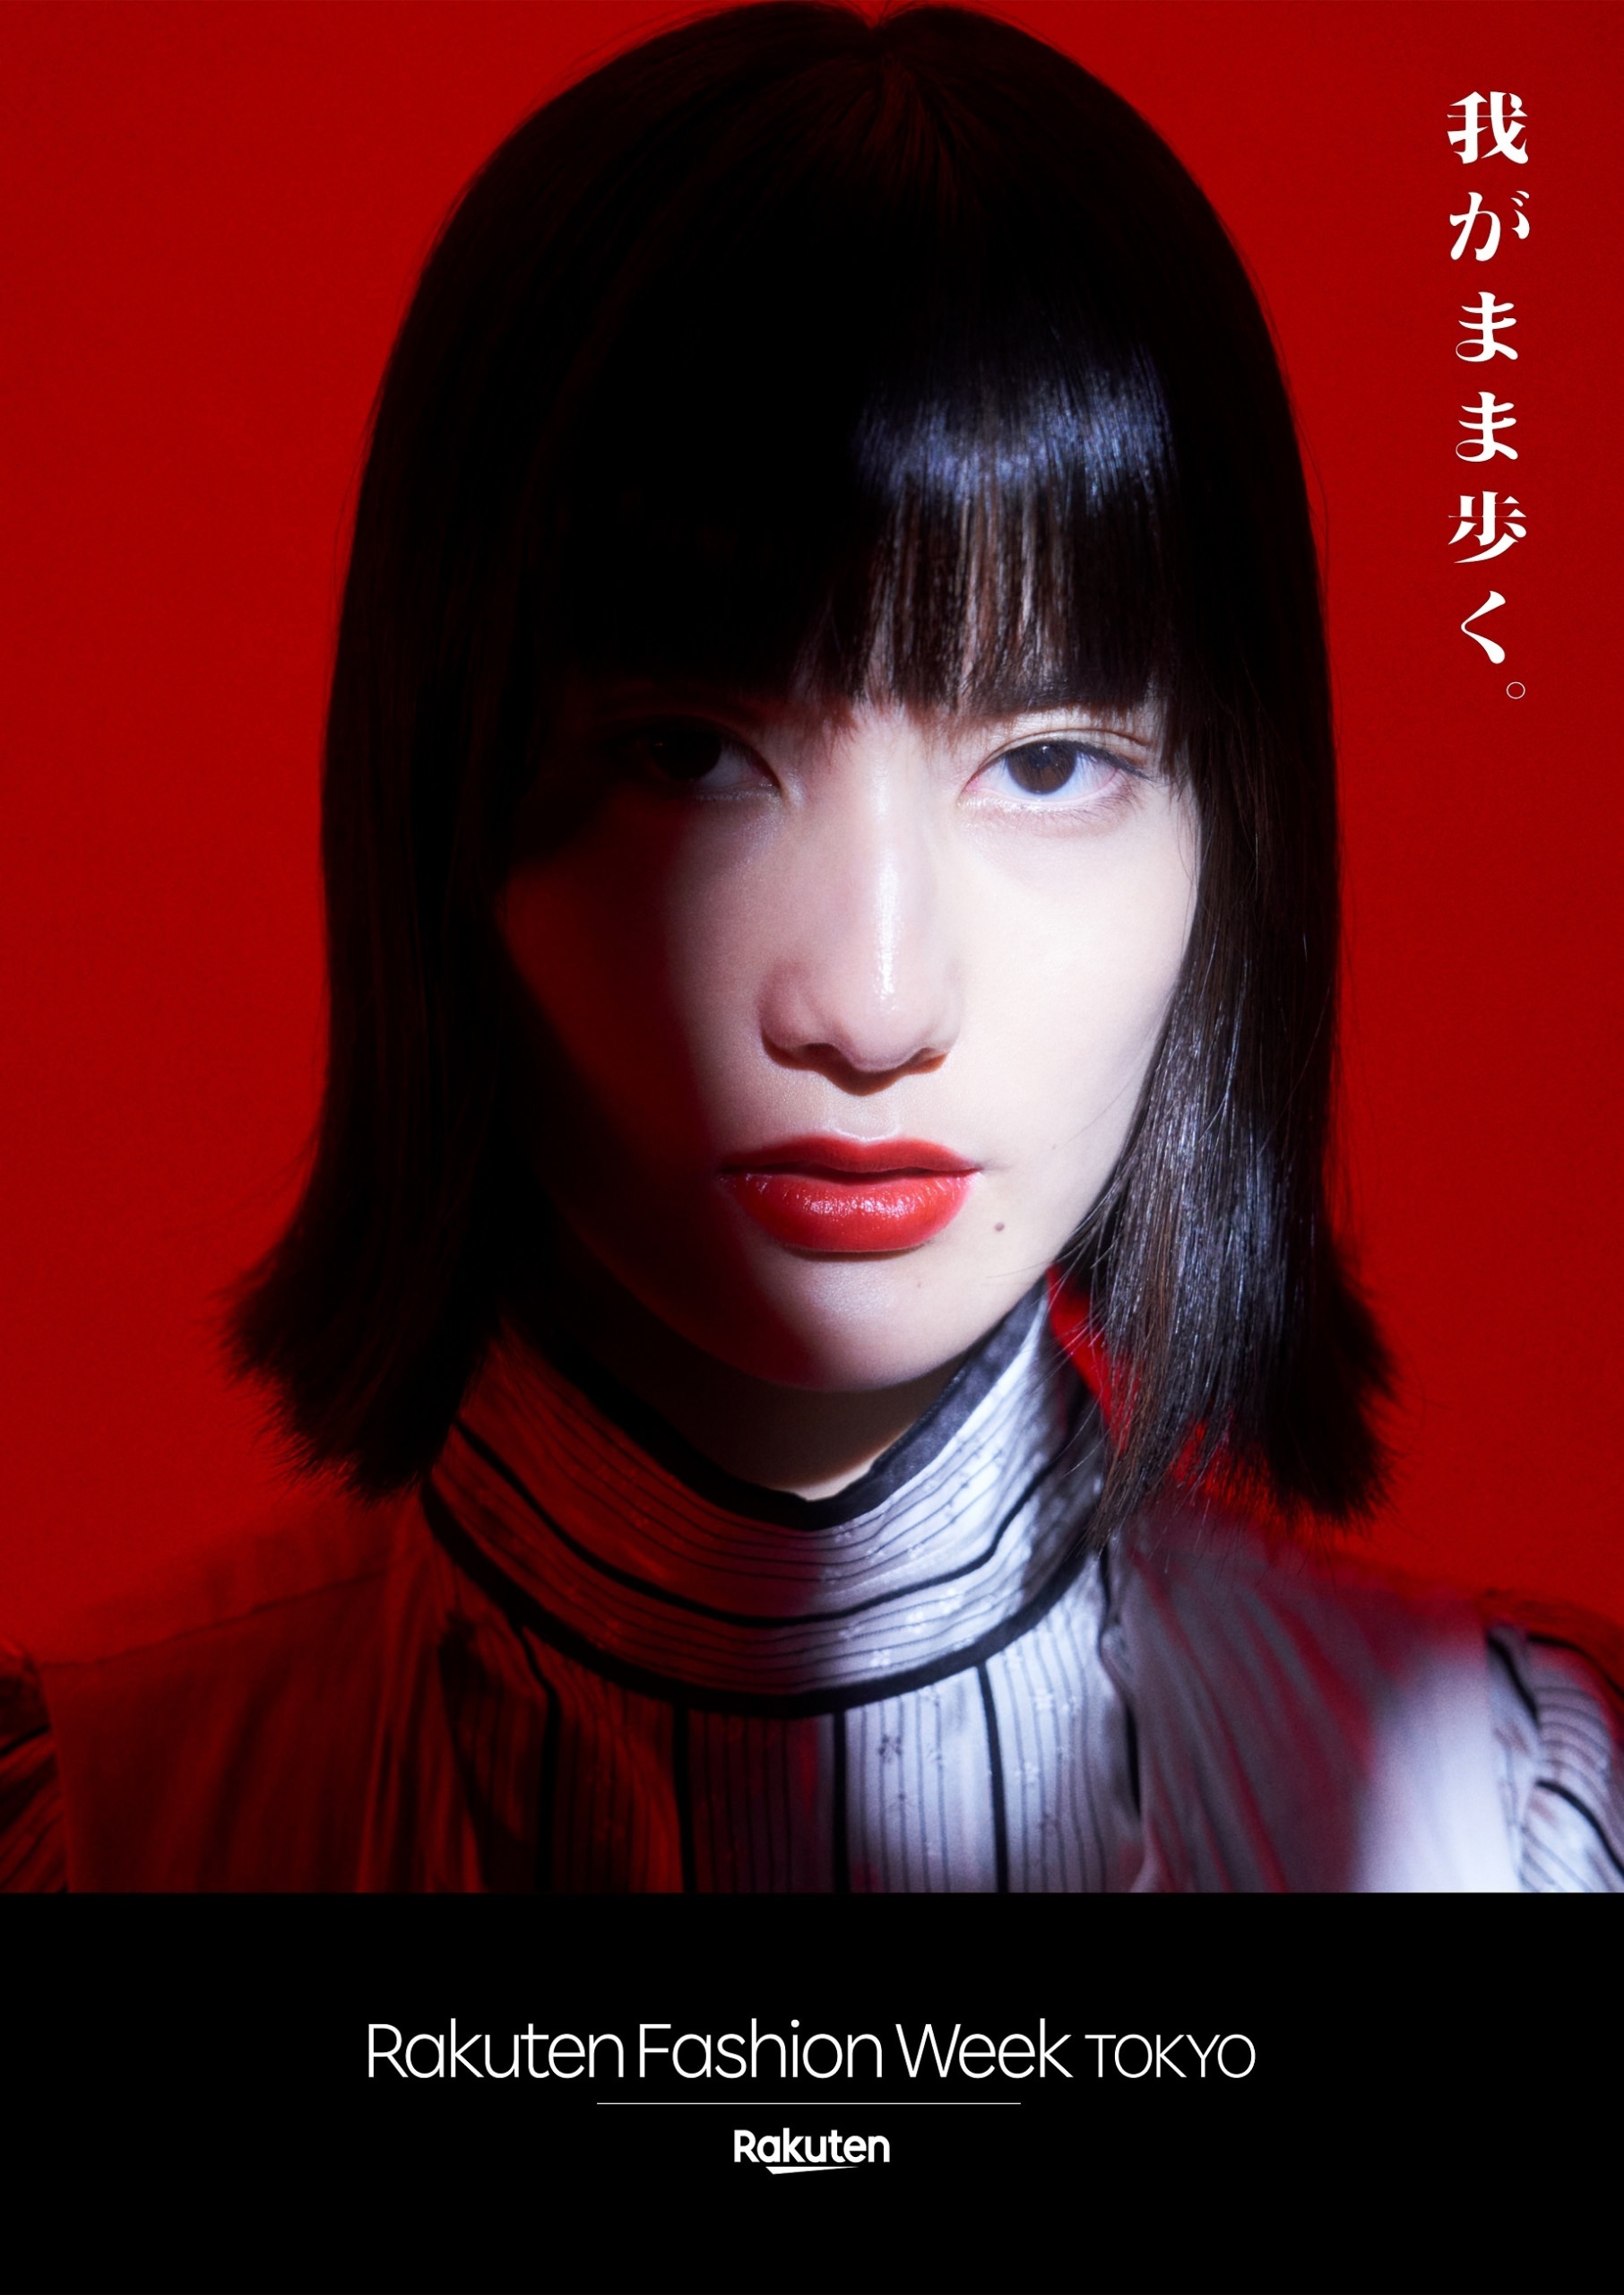 Rakuten Fashion Week TOKYO 2022 S/S
キービジュアルを解禁！モデルに橋本愛を起用